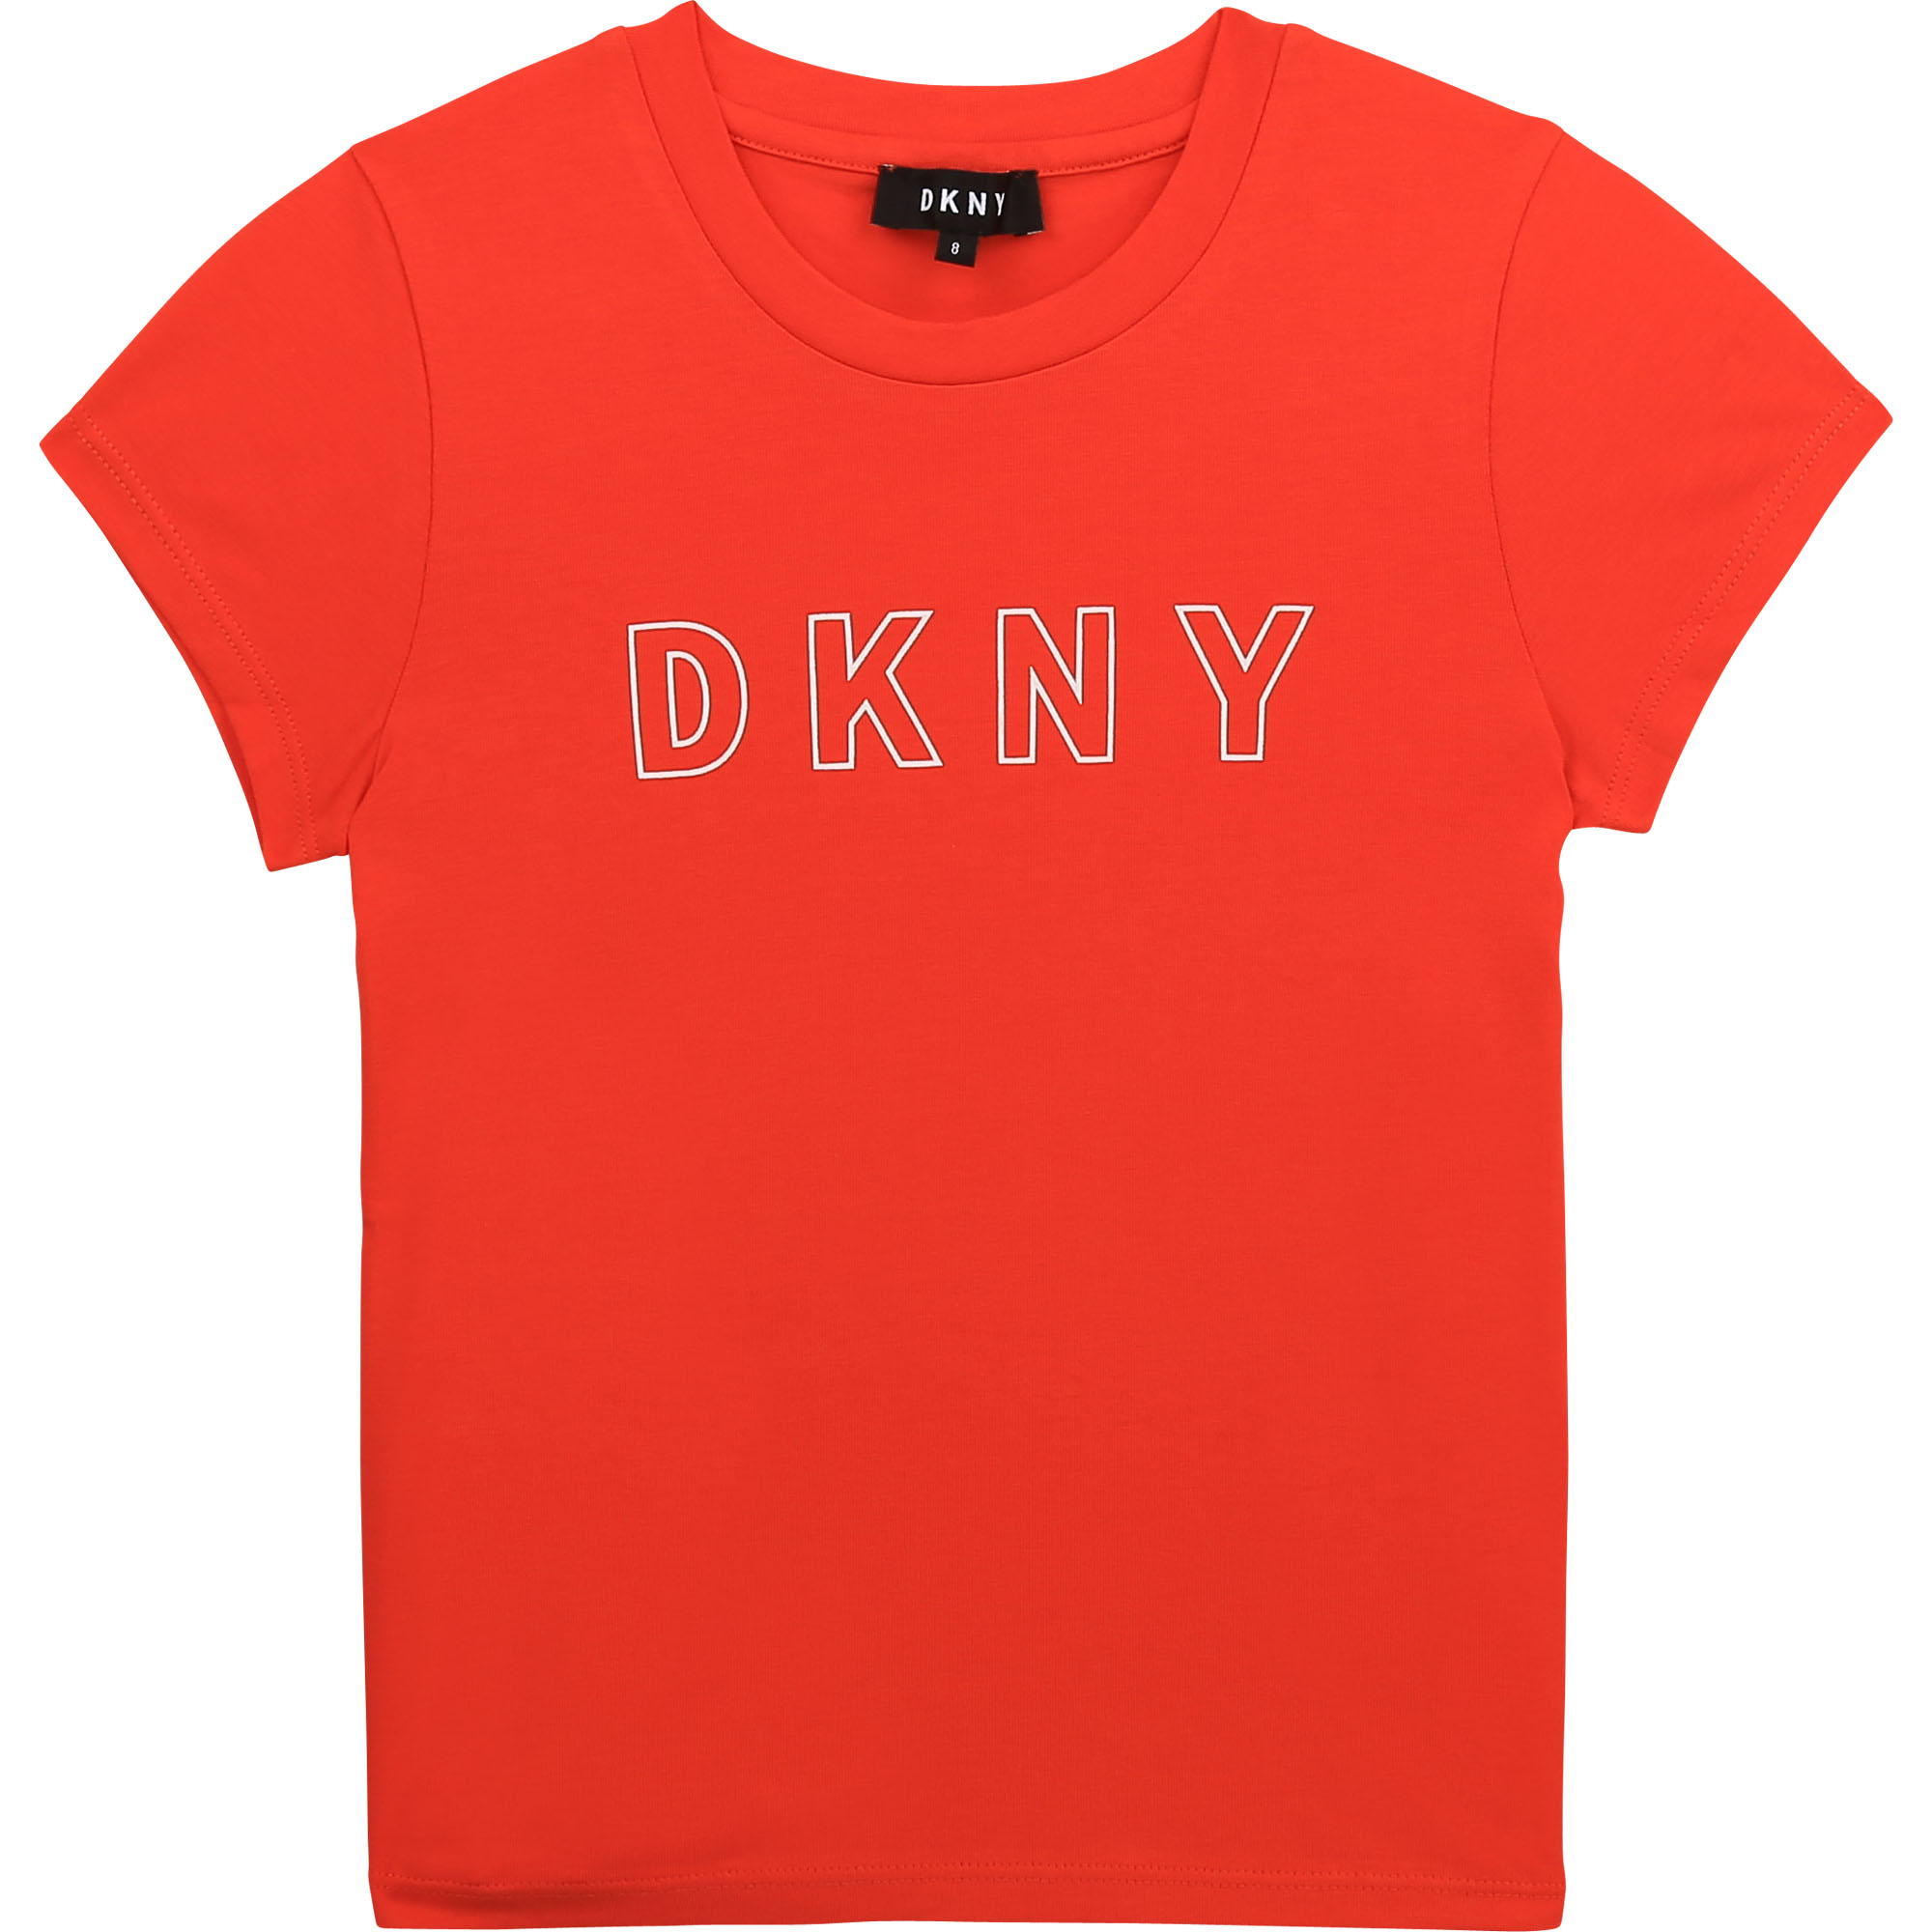 Top Tee-shirts DKNY Enfant Enfant Fille DKNY Vêtements DKNY Enfant Hauts DKNY Enfant Tops Tops Tee-shirt DKNY 5-6 ans blanc Tee-shirts DKNY Enfant 